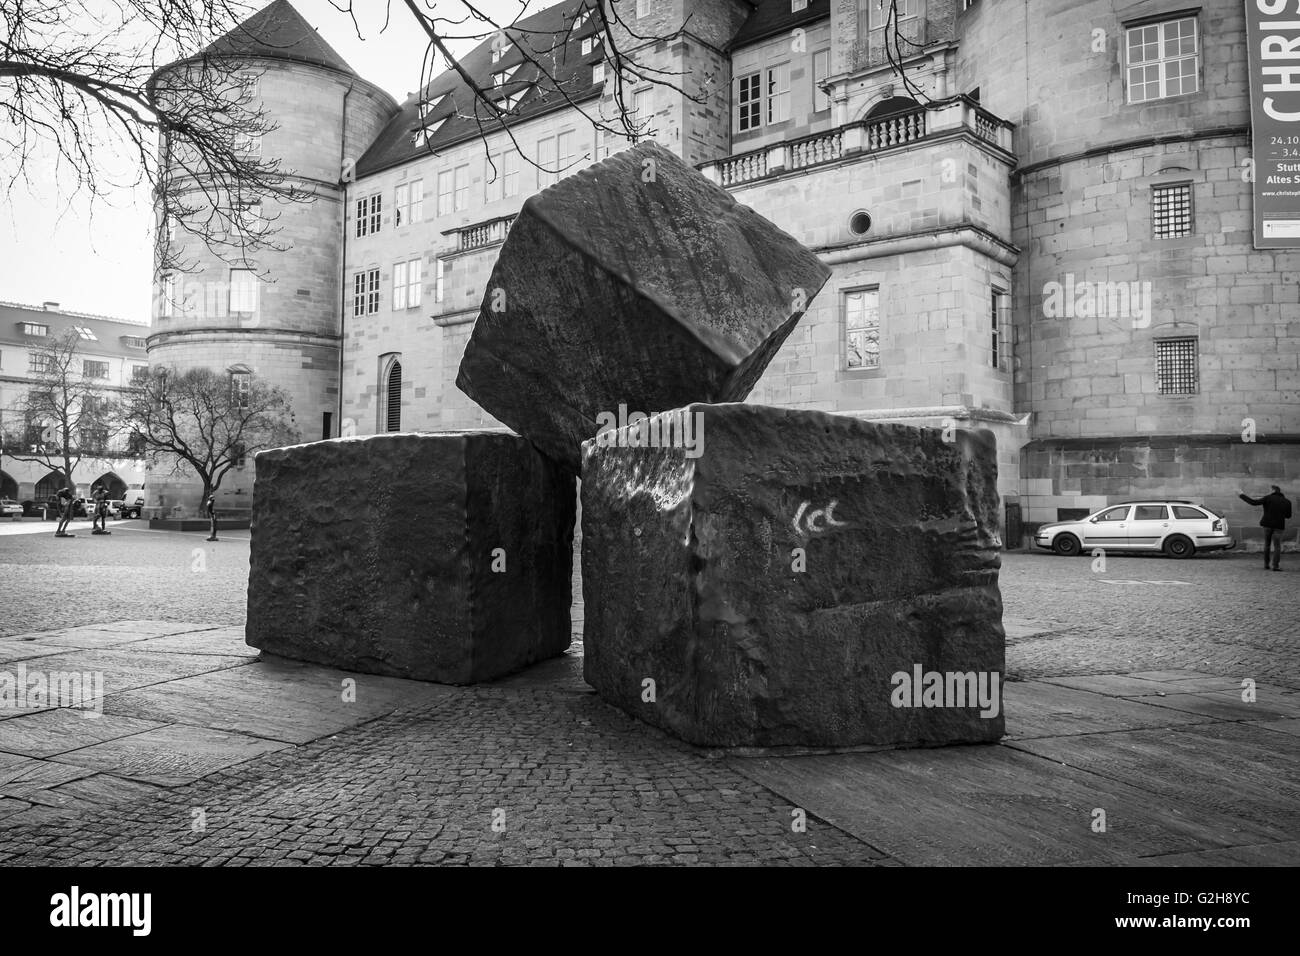 Denkmal für die Opfer des Nationalsozialismus auf dem Hintergrund des alten Schlosses. Schwarz und weiß. Stockfoto